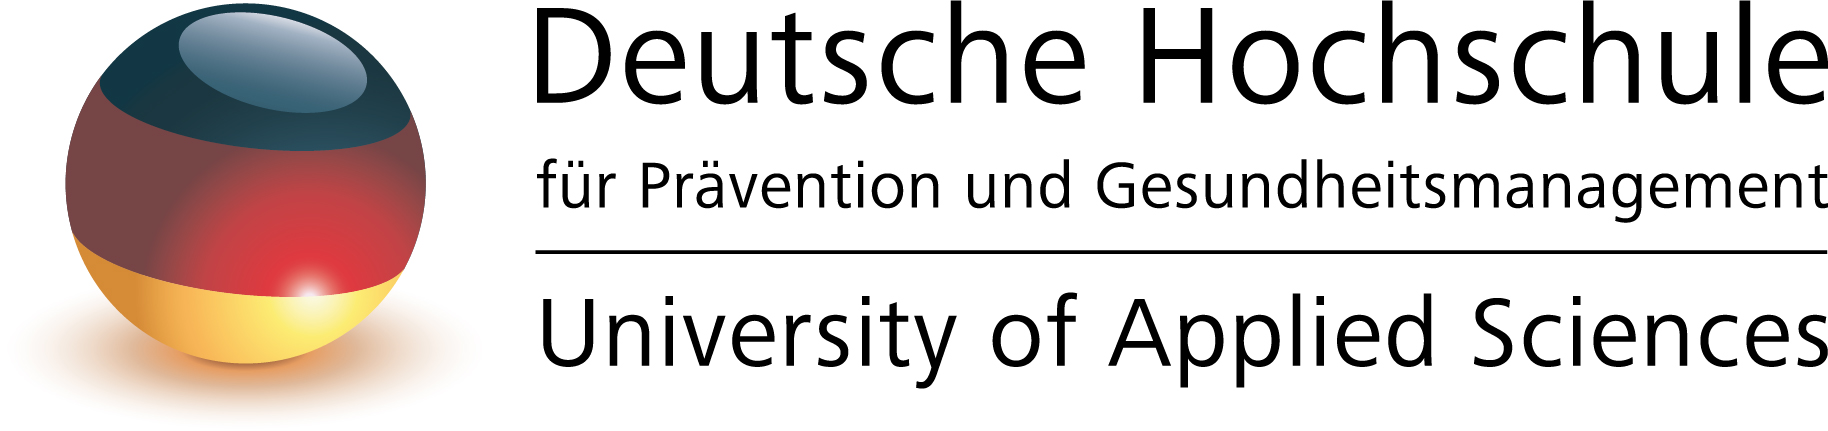 Deutsche Hochschule für Prävention und Gesundheitsmanagement-Studienzentrum Frankfurt Logo